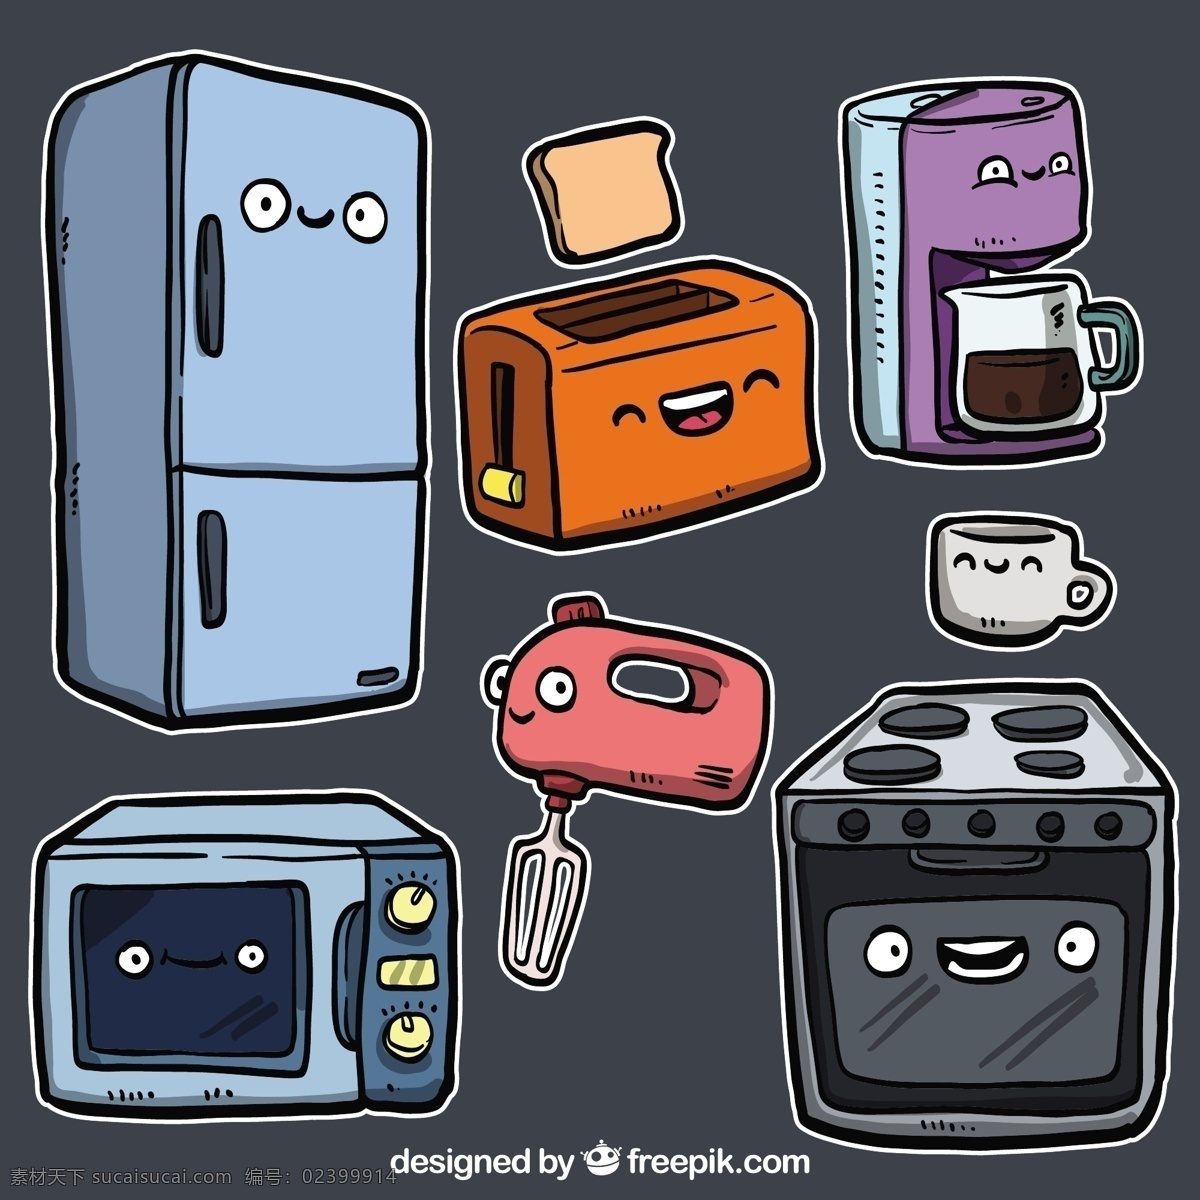 卡通 风格 厨房 咖啡 厨师 烹饪 插图 烤箱 冰箱 微波炉 东西 烤面包机 打浆机